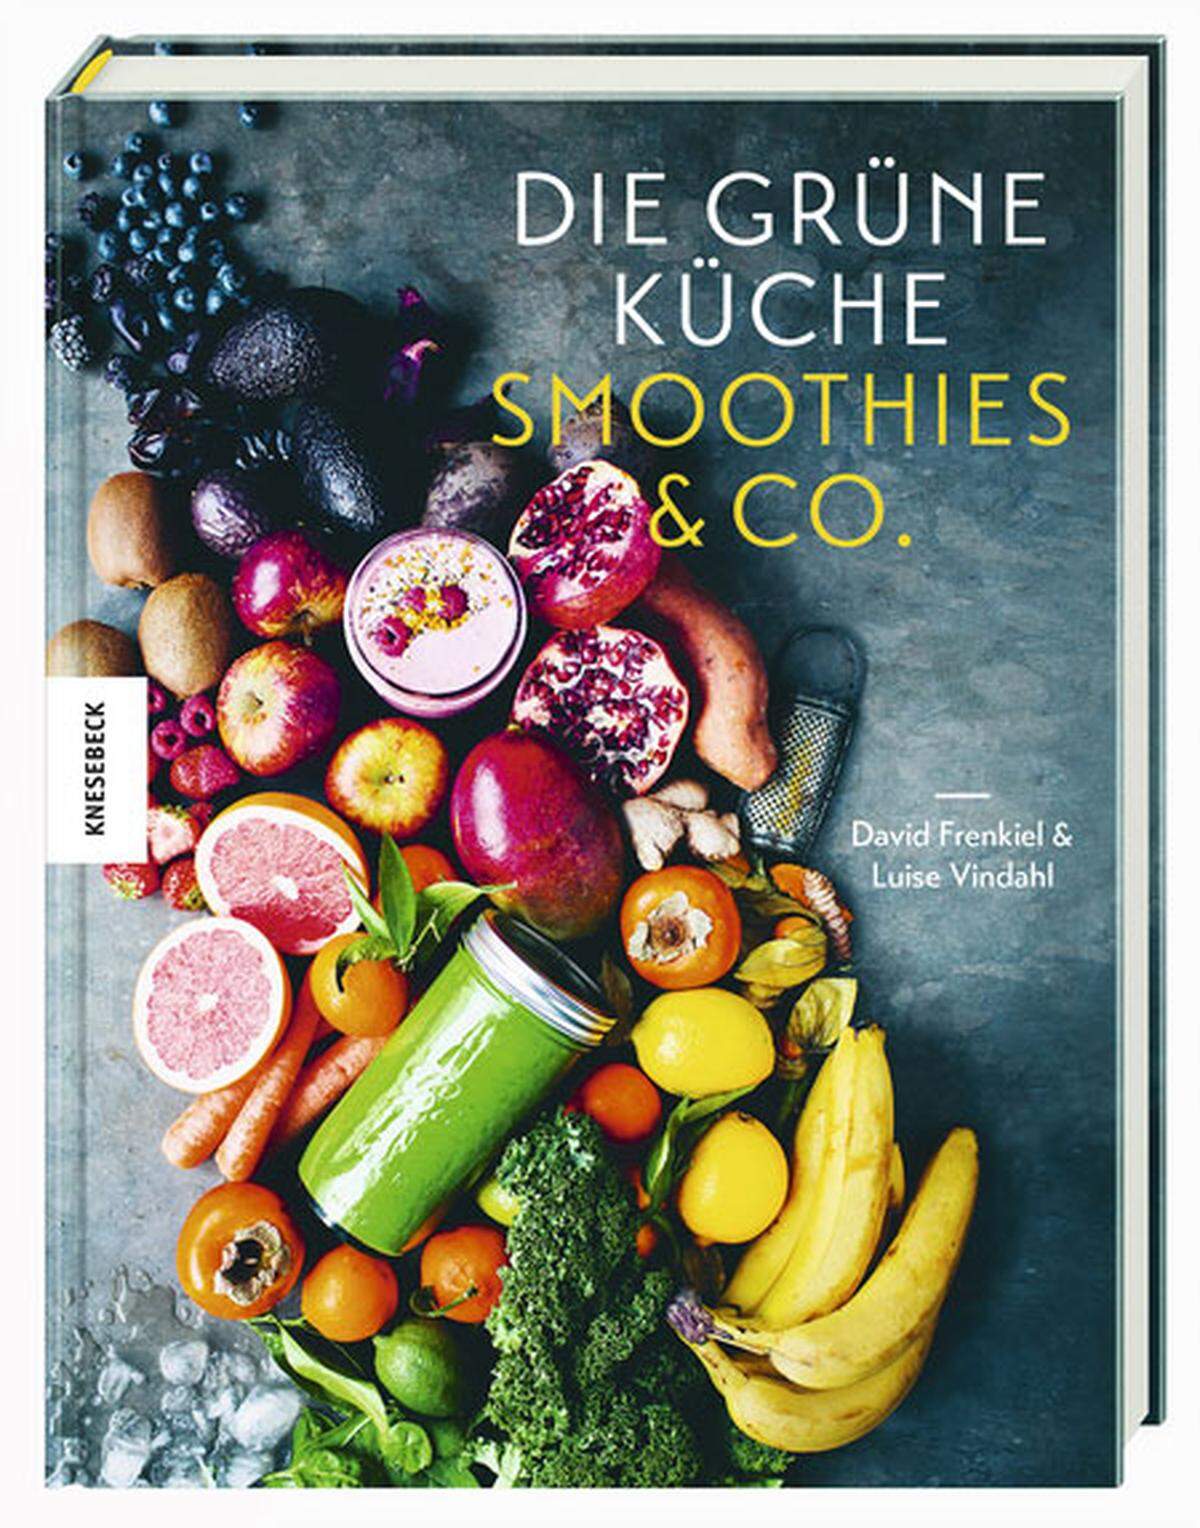 Green Kitchen Stories heißt der Blog, der David Frenkiel und Luise Vindahl erfolgreich gemacht hat. Dieses Buch versammelt nun Rezepte für Smoothies darunter auch herbsttaugliche , Nussmilchdrinks, Tonics oder Eis. Mit Rezepten wie Kurkuma-Tonic, Hagebutten-Affogato, Apfel-Grünkohl-Saft oder Orangen- Sesam-Smoothie. "Die grüne Küche. Smoothies &amp; Co.", Knesebeck, 17,50 Euro.